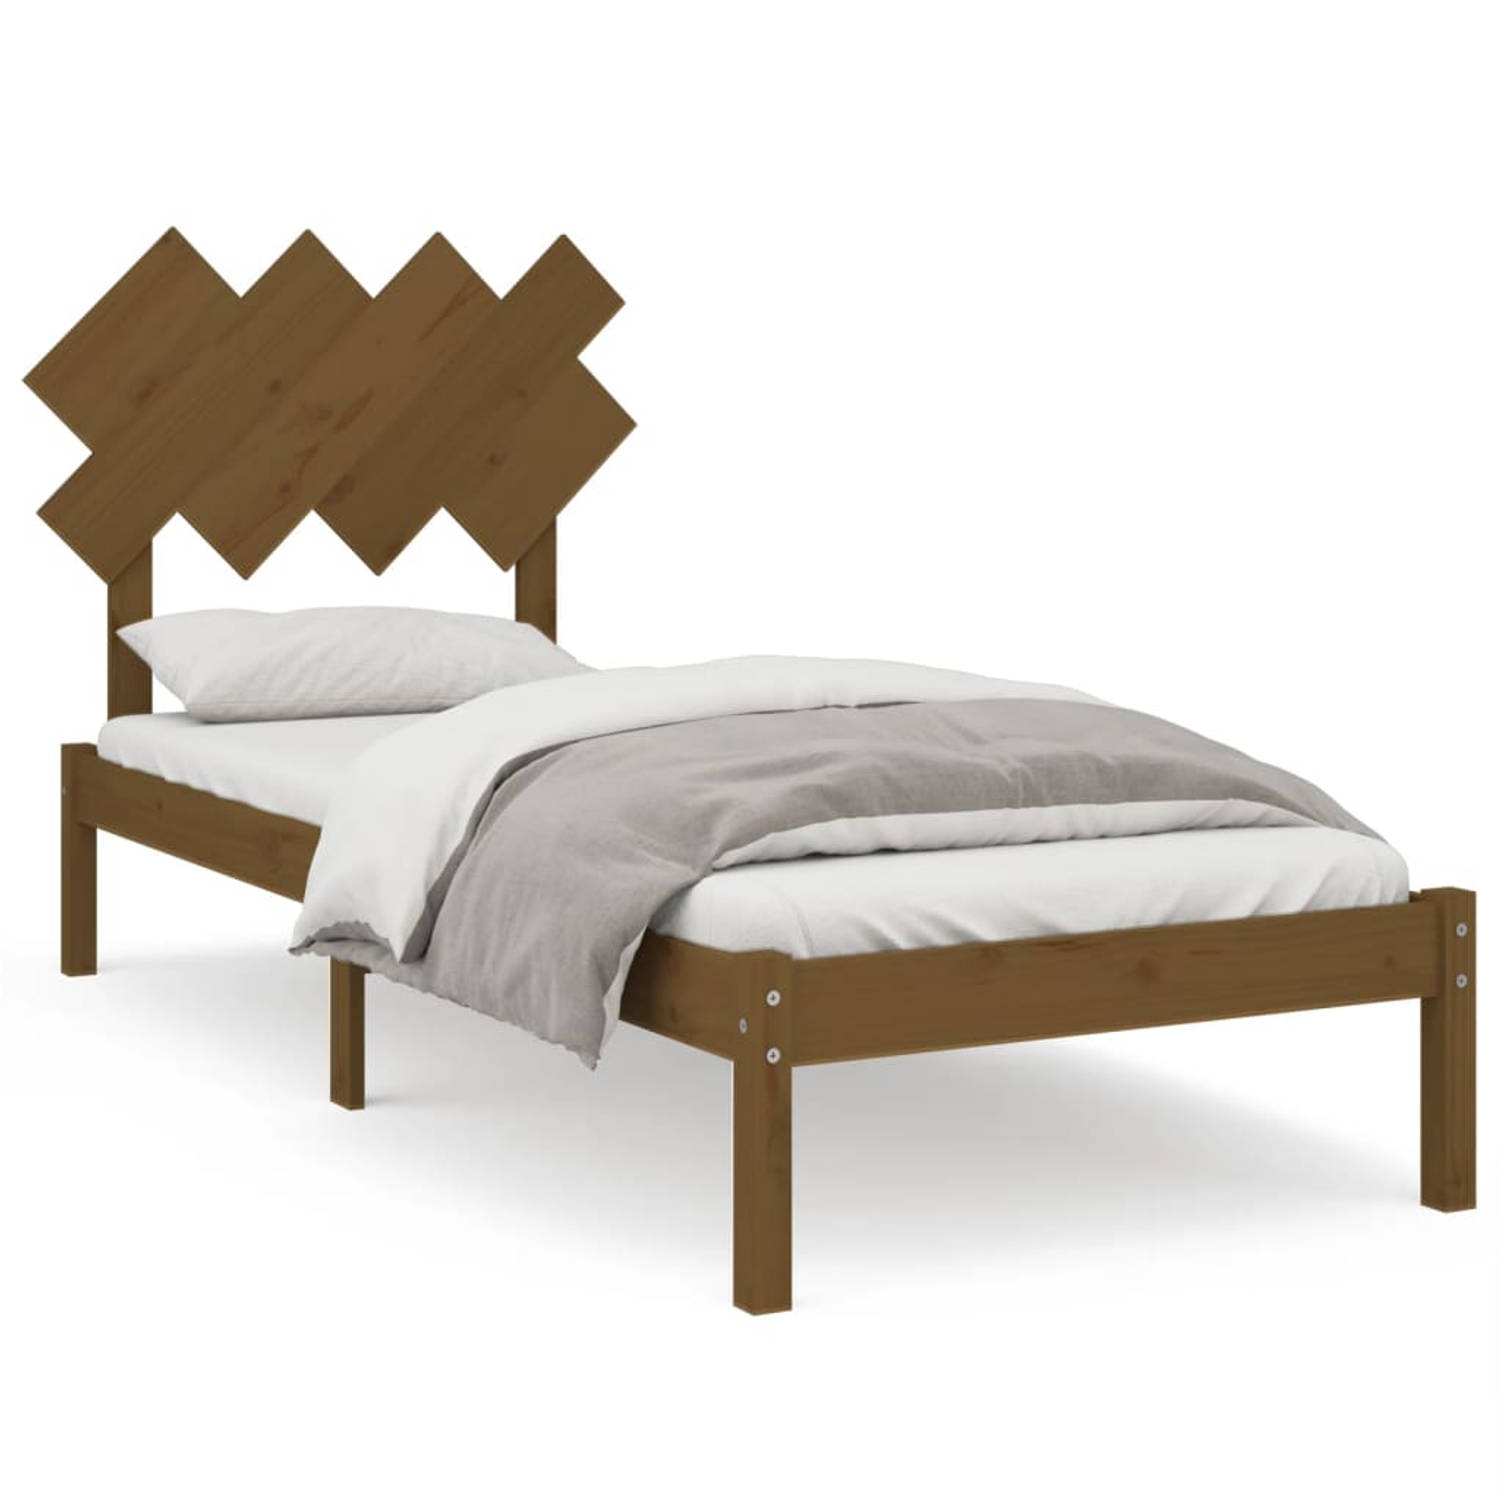 The Living Store Bedframe massief hout honingbruin 90x200 cm - Bedframe - Bedframes - Bed - Bedbodem - Ledikant - Bed Frame - Massief Houten Bedframe - Slaapmeubel - Eenpersoonsbed